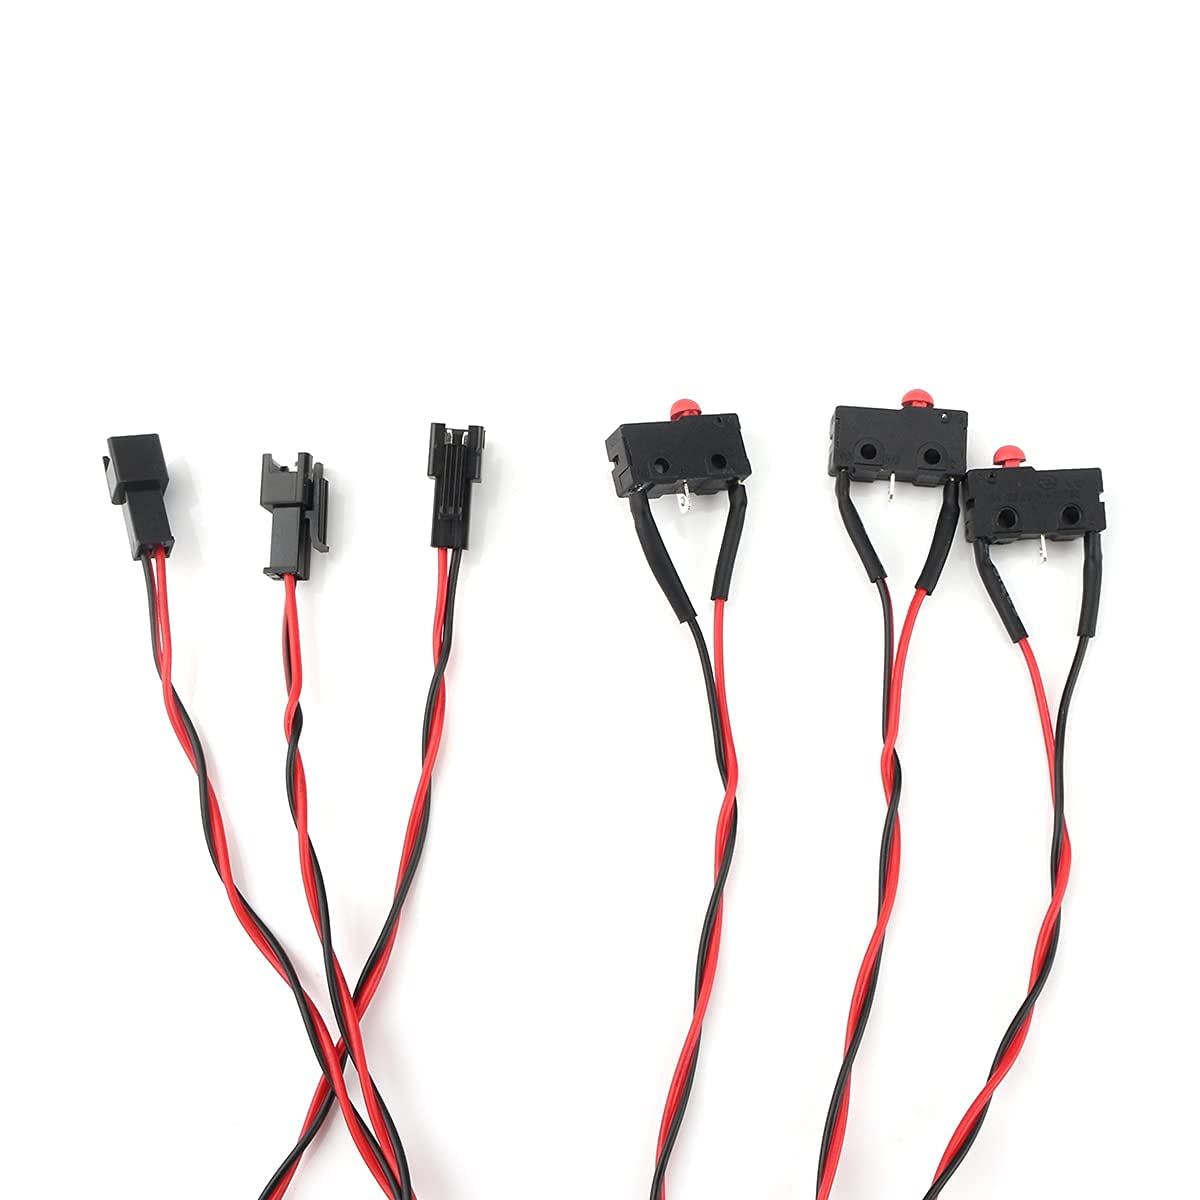 FLSUN® 3pcs Mechanical Endstop Limit Switch Module + 730mm Cable for QQ-S / Q5